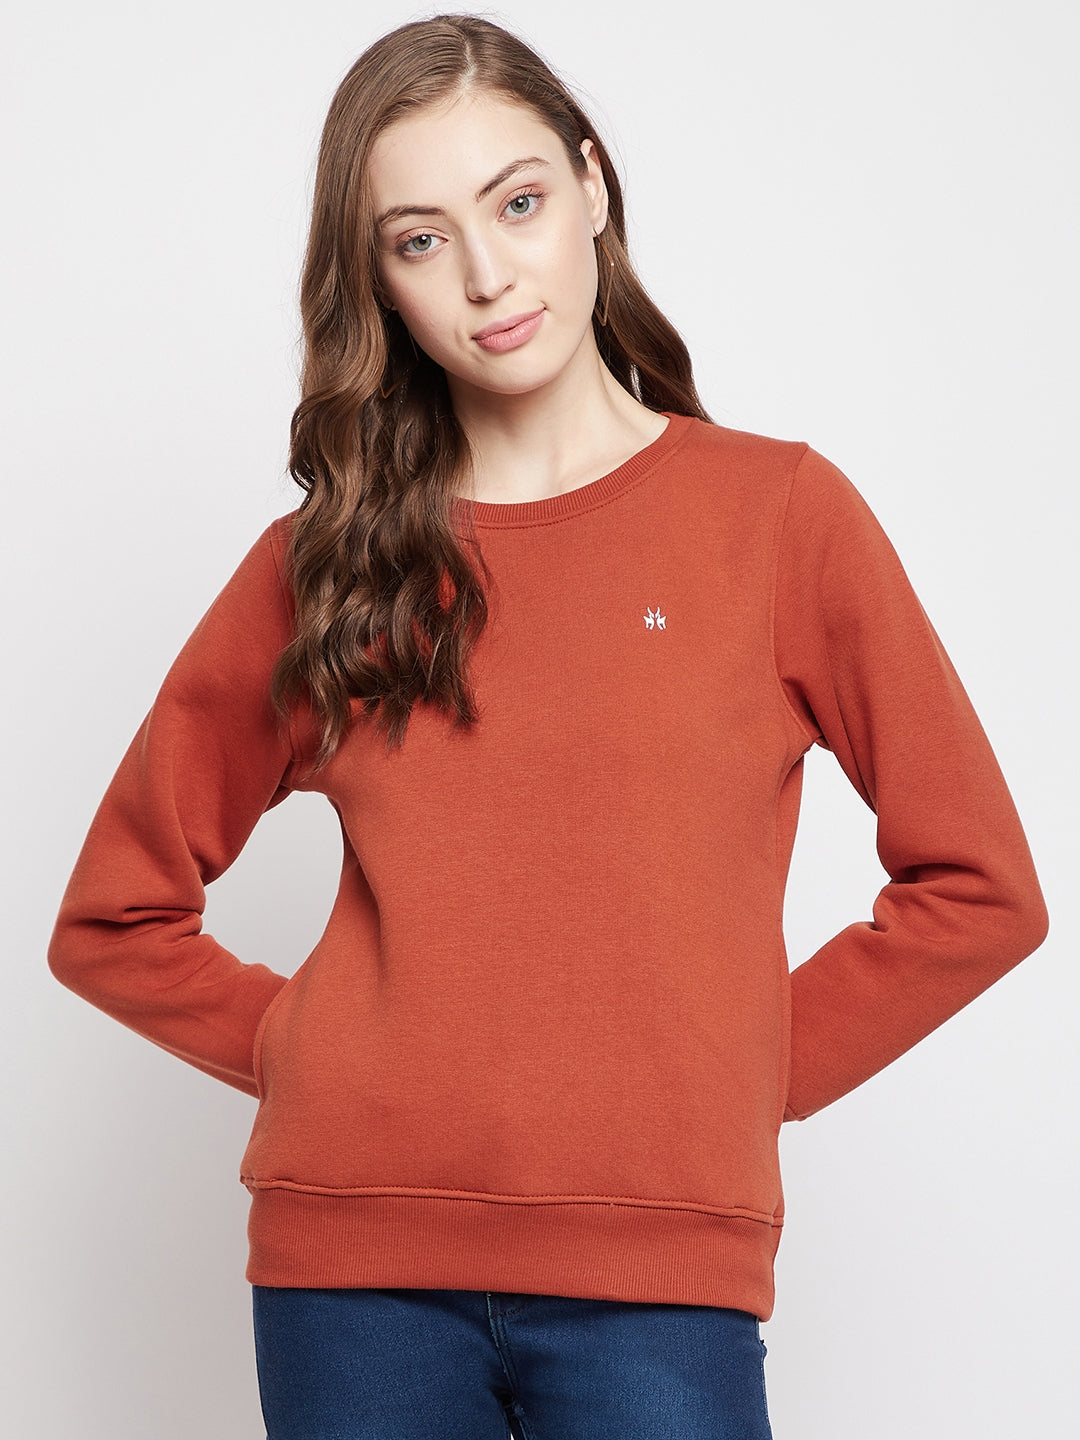 Red Round Neck Sweatshirt - Women Sweatshirts